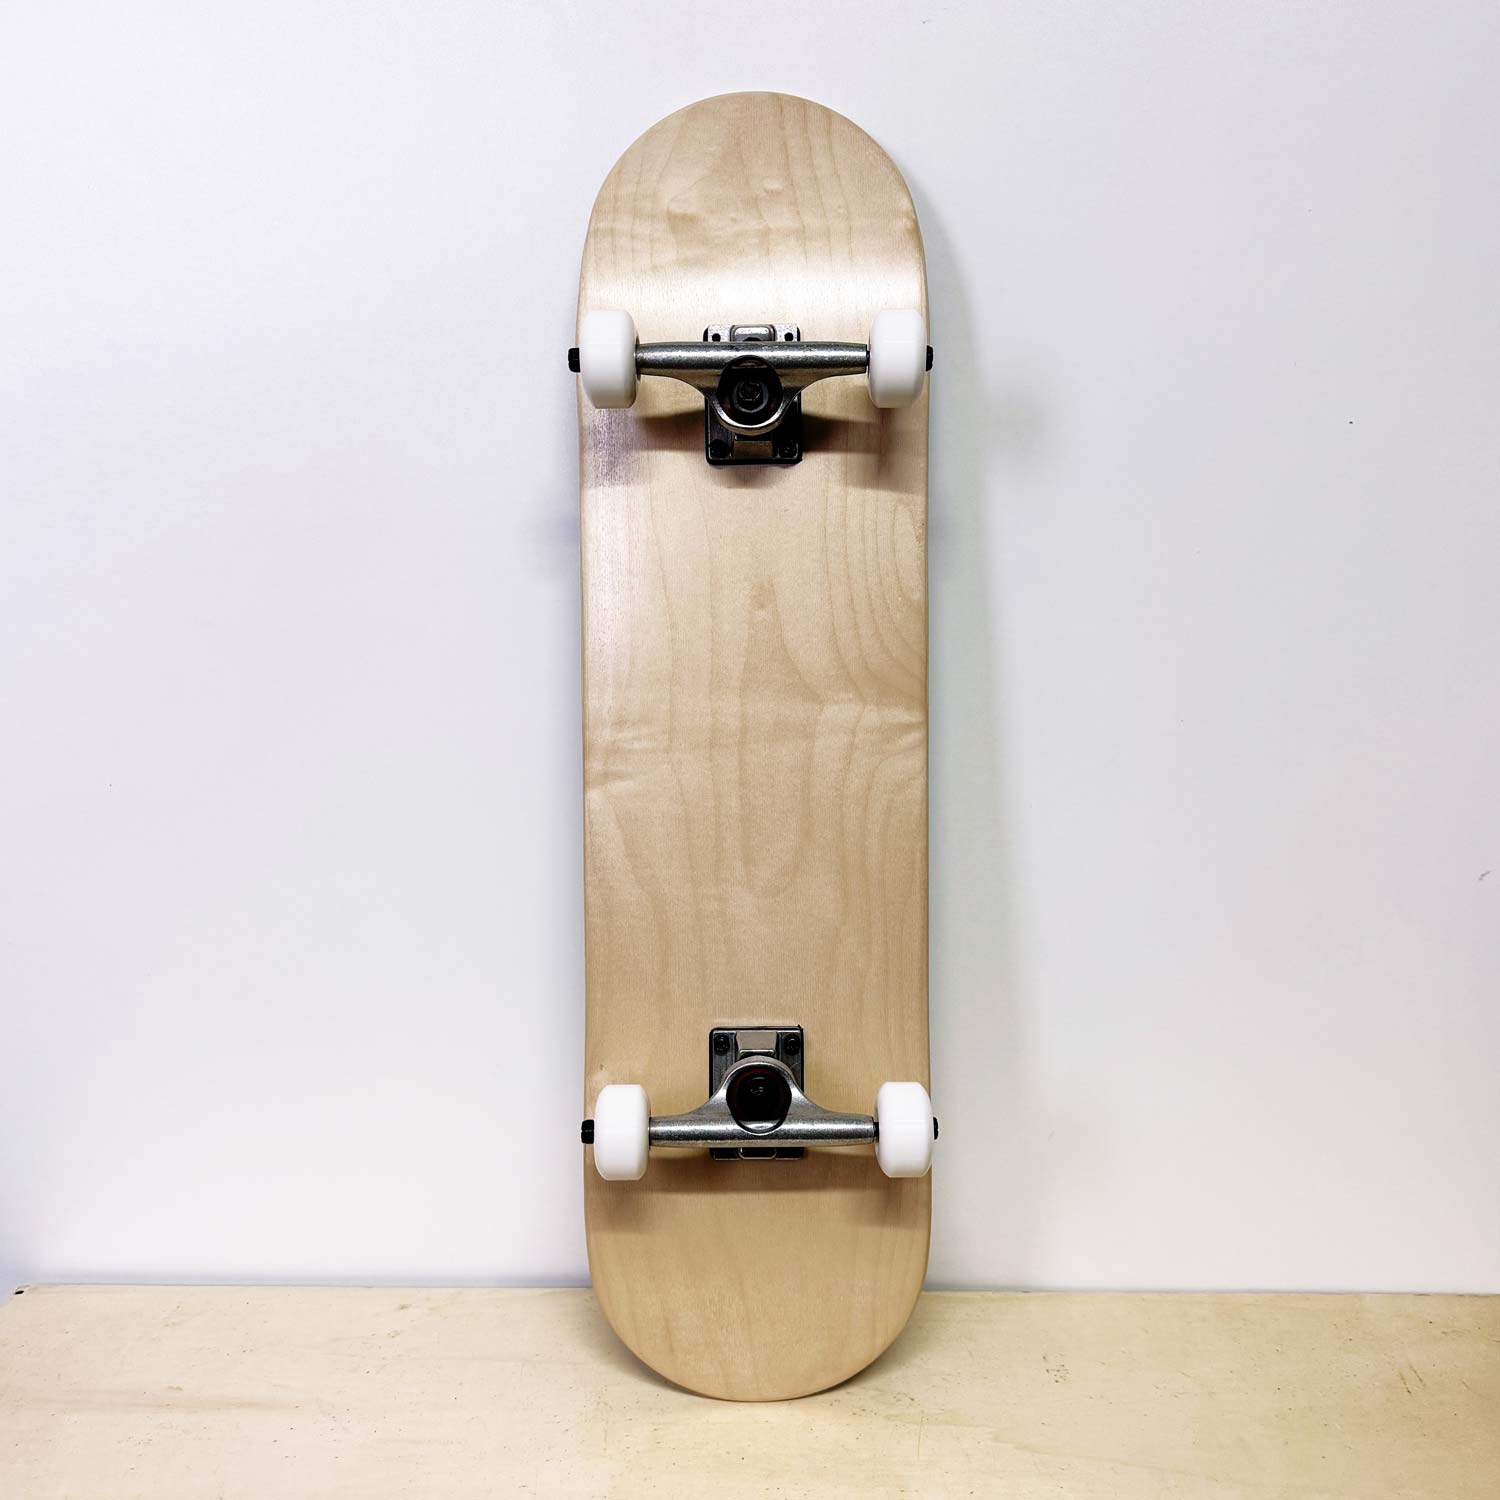 skateboard completo blank liscio senza grafica, solo legno naturale - prodotto da algal board